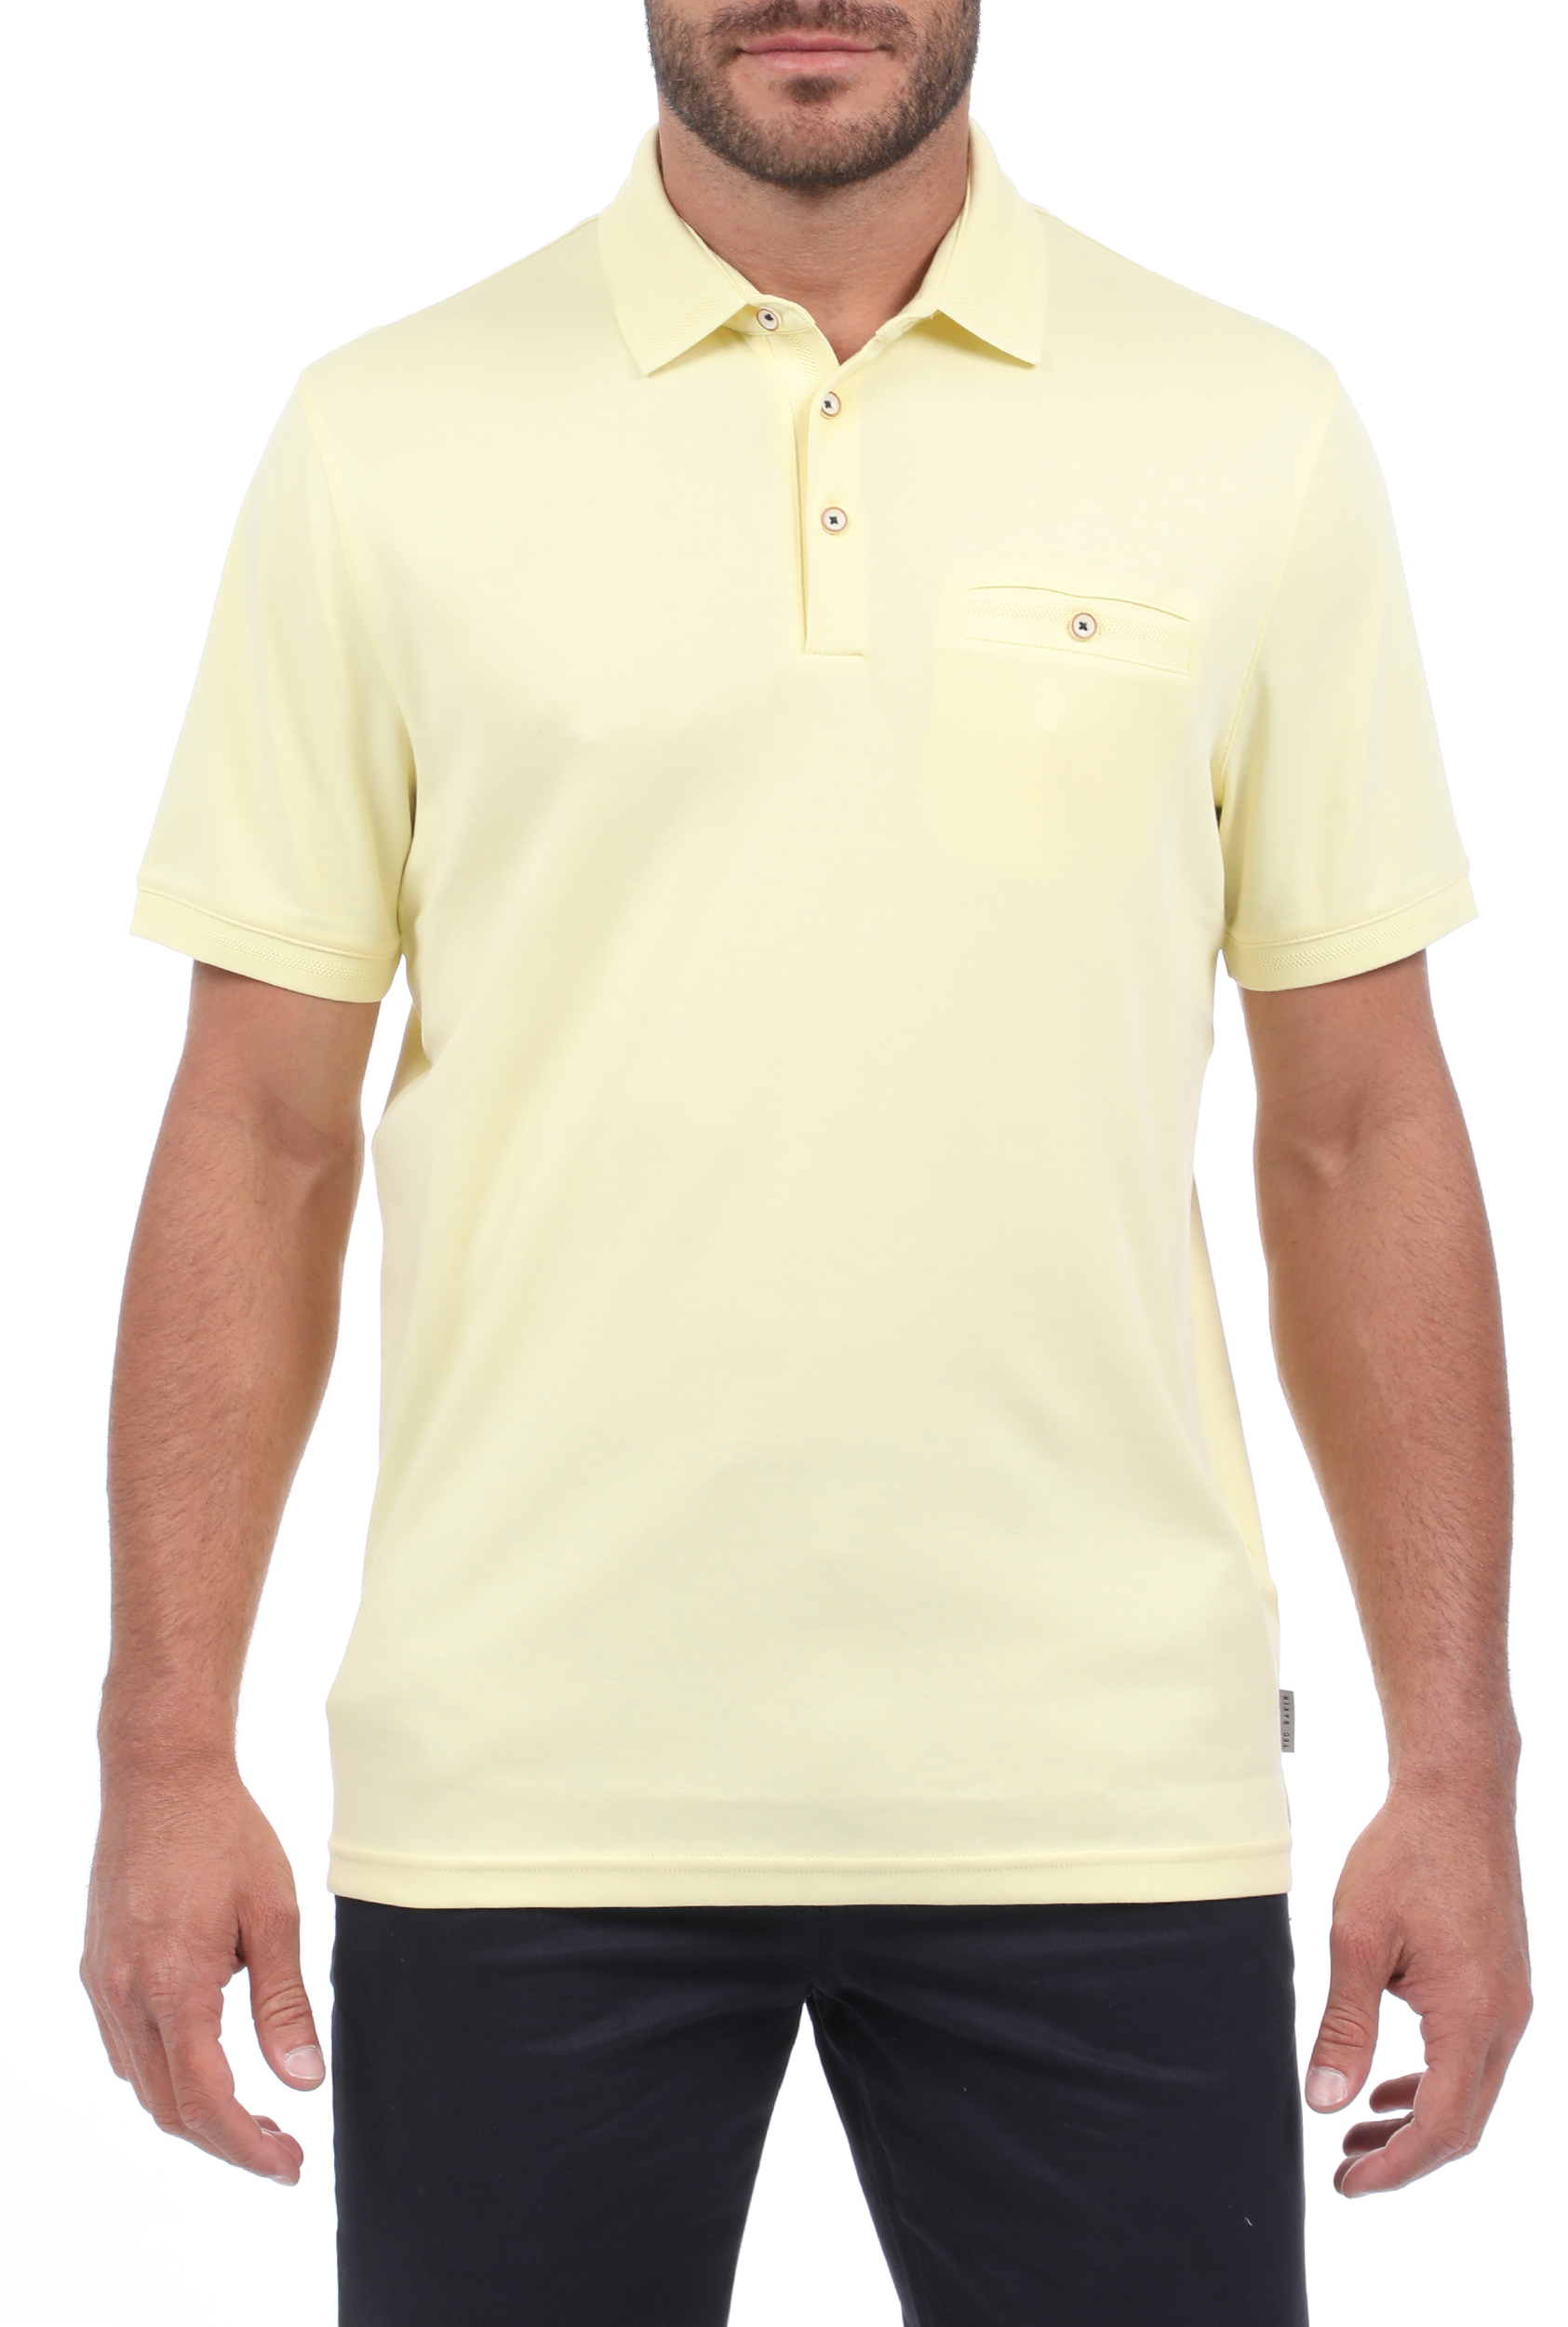 Ανδρικά/Ρούχα/Μπλούζες/Πόλο TED BAKER - Ανδρική polo μπλούζα TED BAKER choon κίτρινη